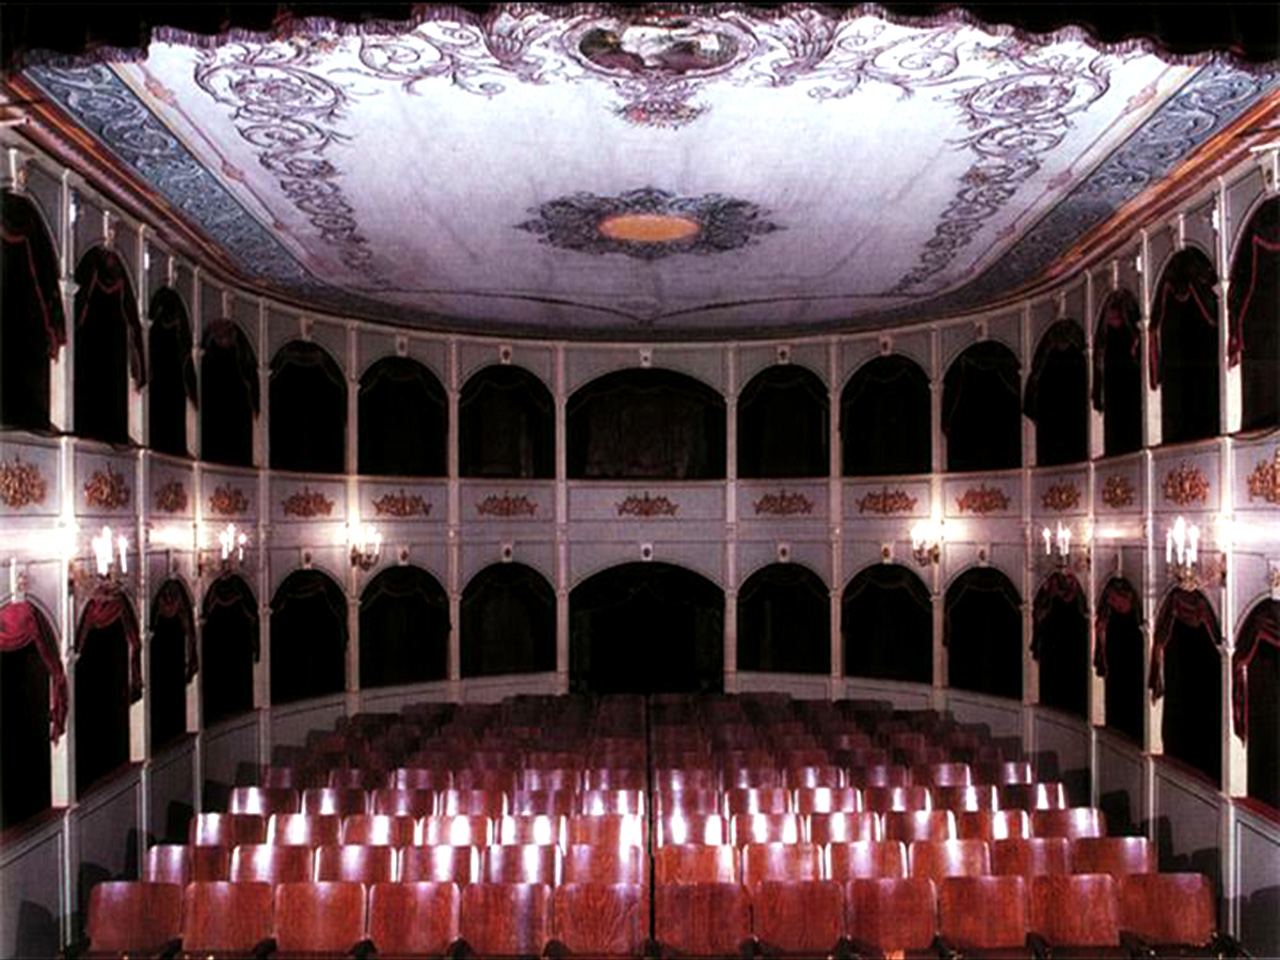 Unutrašnjost najstarijeg hrvatskog kazališta u Hvaru s drvenim stolicama te ložama u prizemlju i na katu.